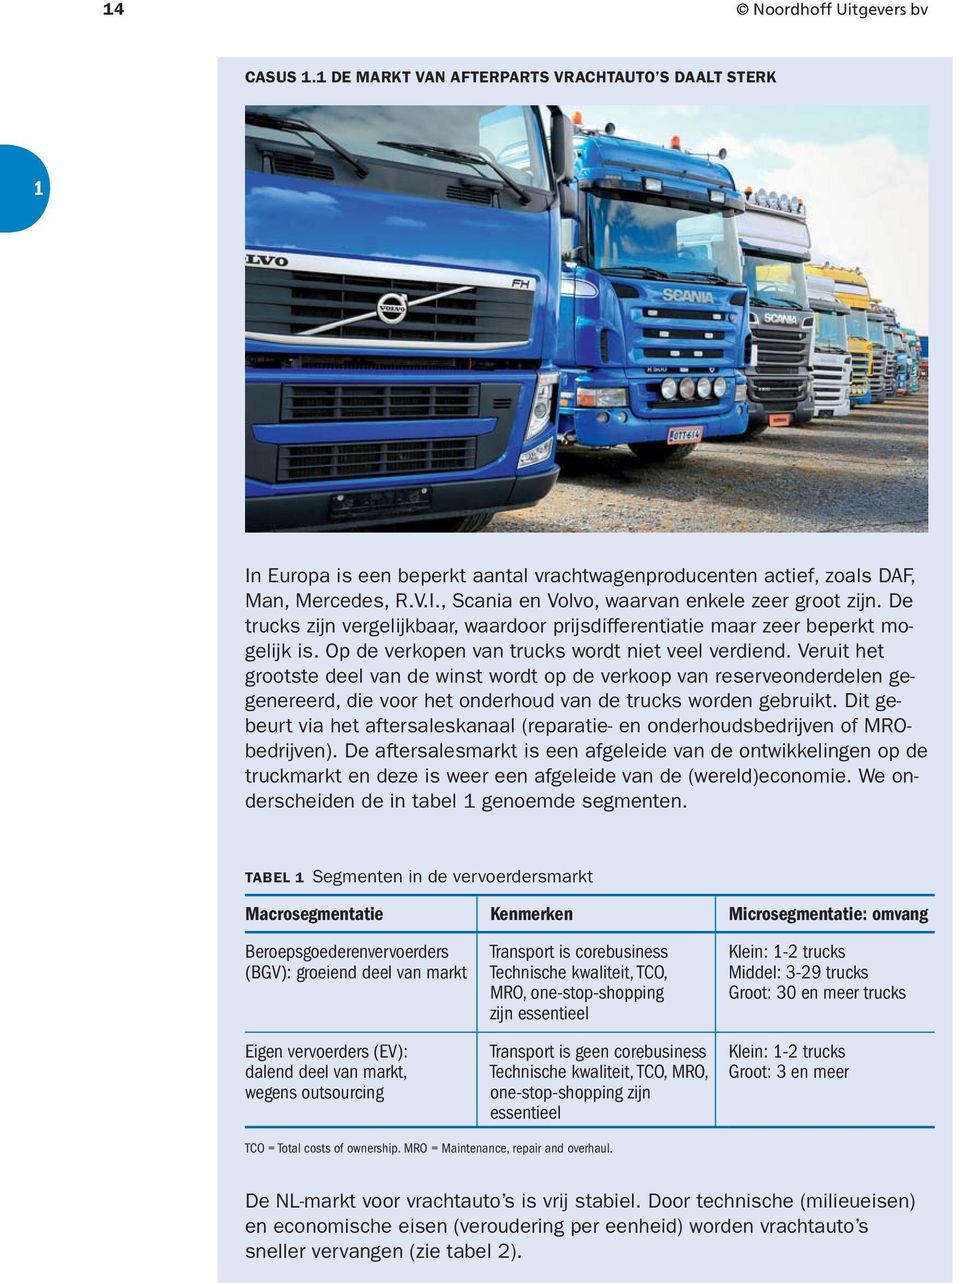 Veruit het grootste deel van de winst wordt op de verkoop van reserveonderdelen gegenereerd, die voor het onderhoud van de trucks worden gebruikt.